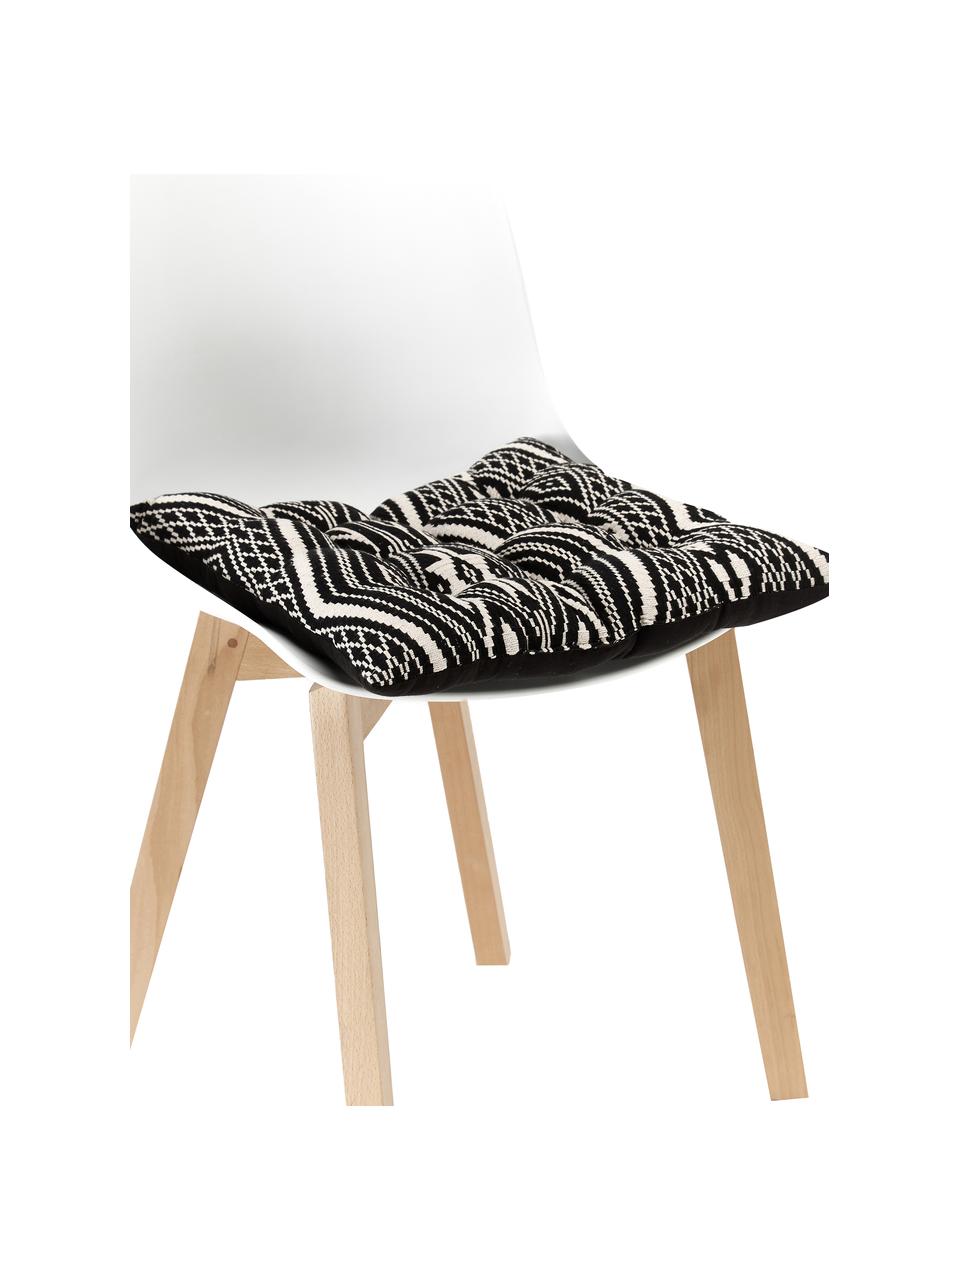 Baumwoll-Sitzkissen Blaki in Schwarz, Bezug: 100% Baumwolle, Schwarz, Cremeweiß, B 40 x L 40 cm